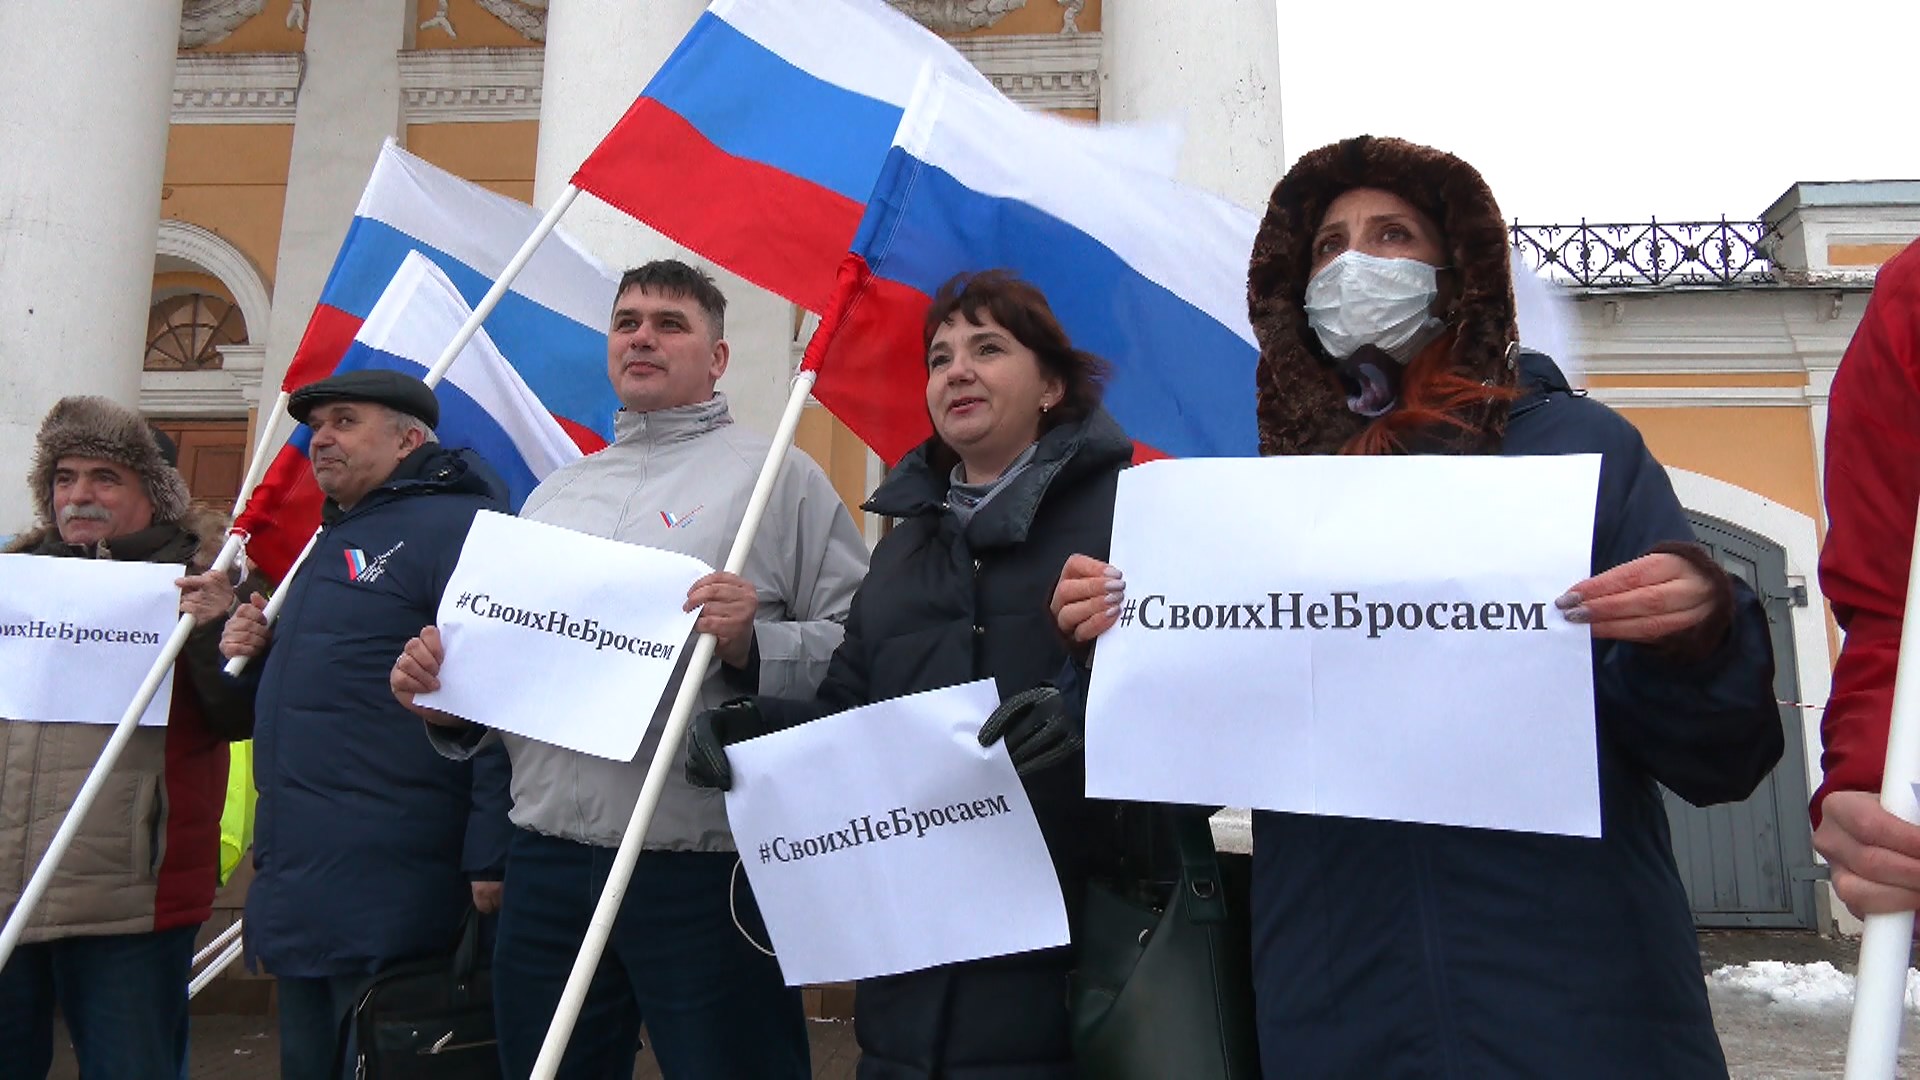 Костромичи вышли на площадь с плакатами «Своих не бросаем» | ГТРК «Кострома»